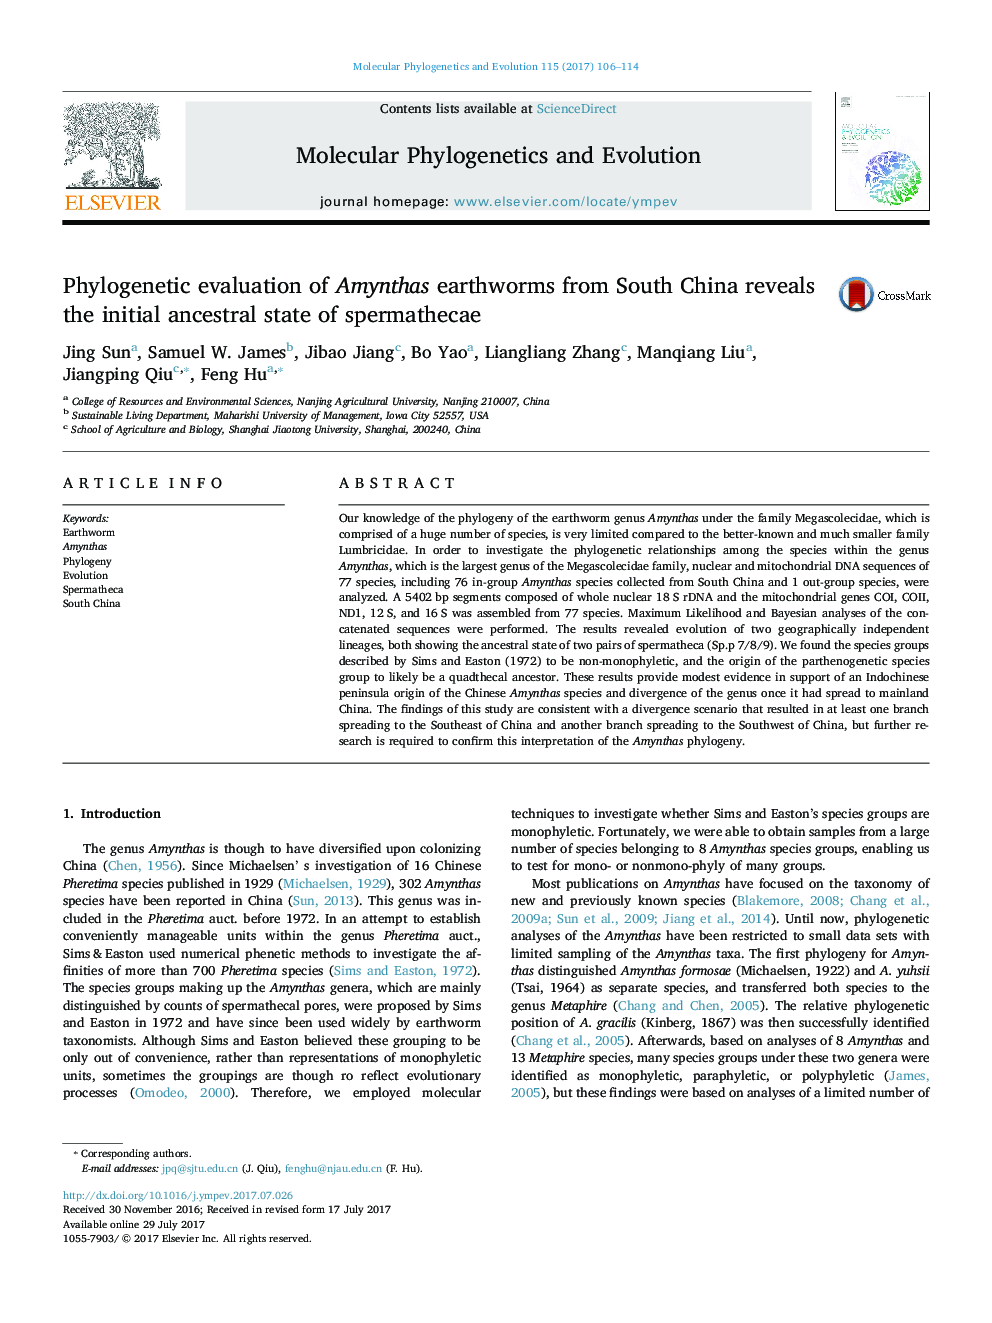 ارزیابی فیلوژنتیک از کرم های خاکی آمینث از جنوب چین نشان دهنده وضعیت اولیه اجداد اسپرماتیکای 